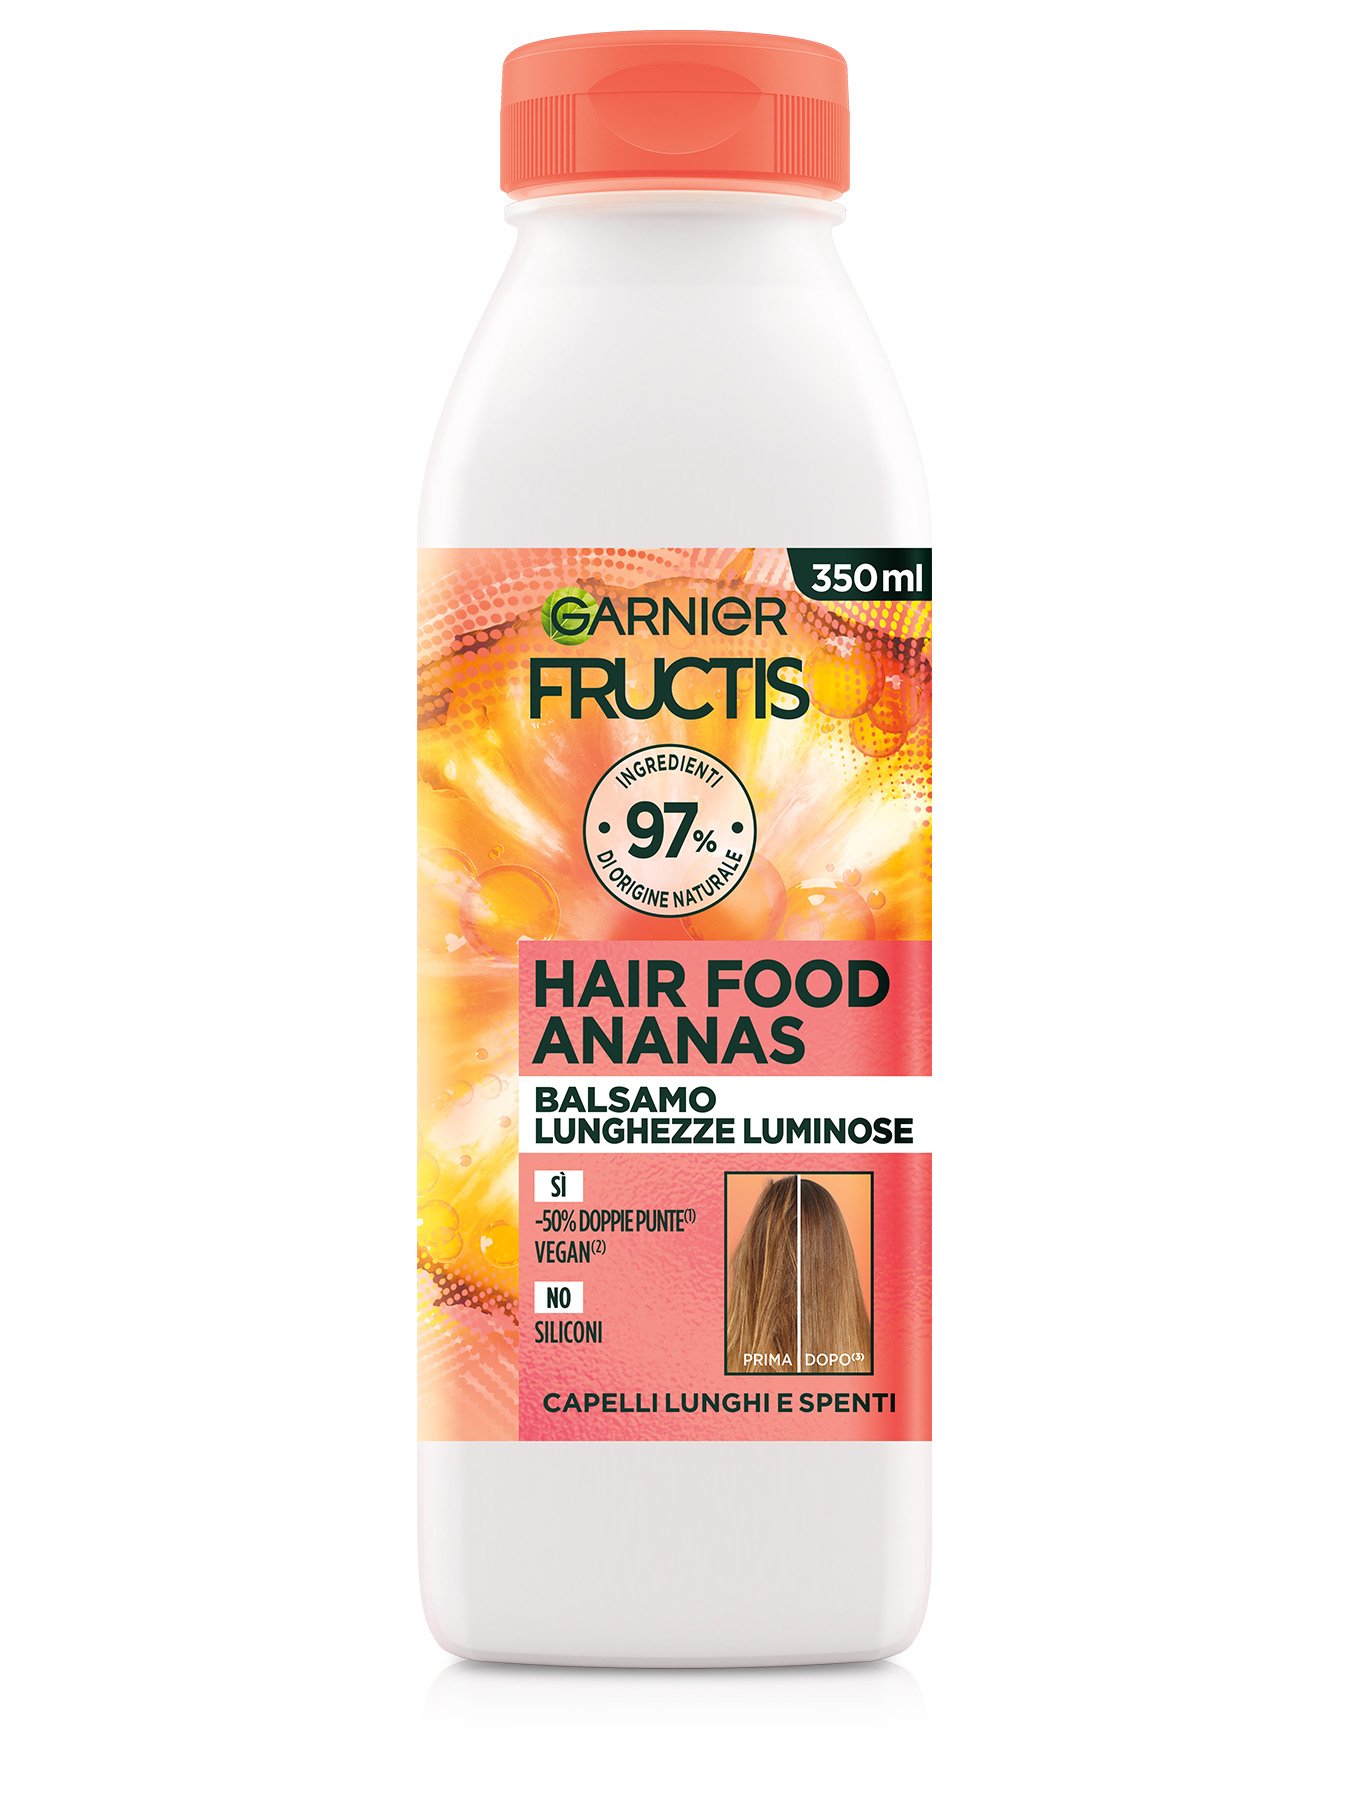 Fructis Hair Food Ananas Balsamo